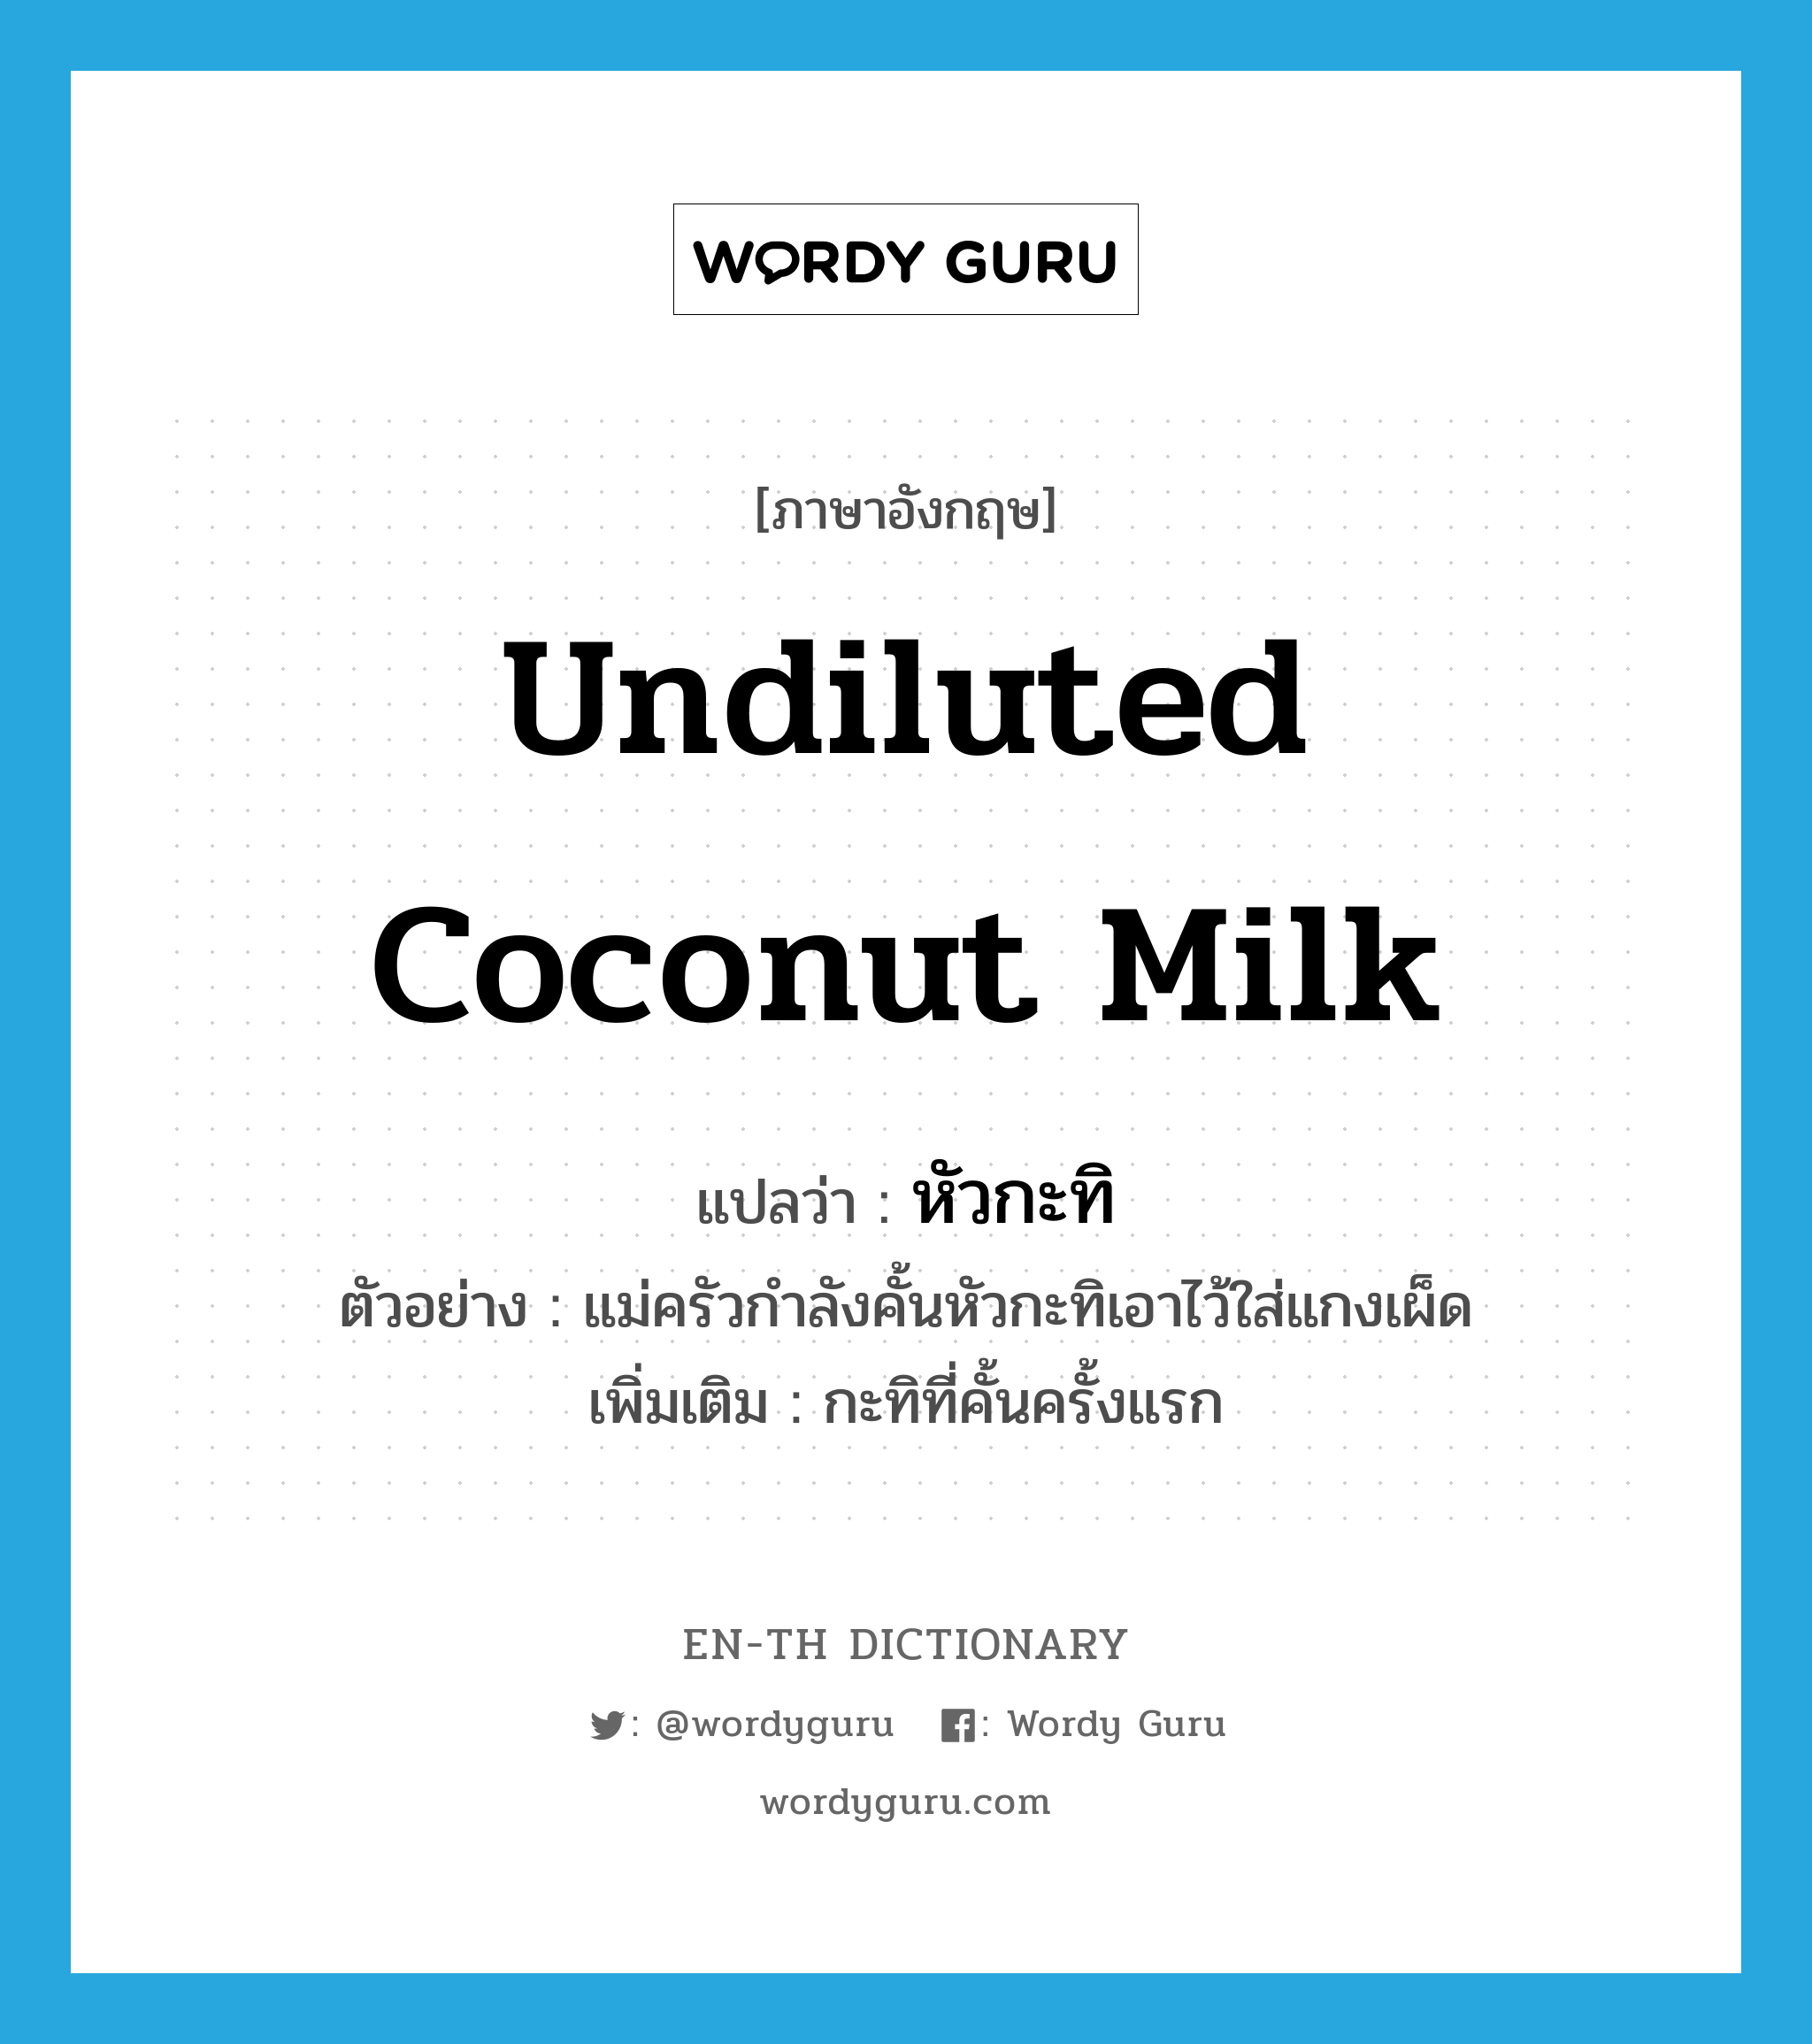 หัวกะทิ ภาษาอังกฤษ?, คำศัพท์ภาษาอังกฤษ หัวกะทิ แปลว่า undiluted coconut milk ประเภท N ตัวอย่าง แม่ครัวกำลังคั้นหัวกะทิเอาไว้ใส่แกงเผ็ด เพิ่มเติม กะทิที่คั้นครั้งแรก หมวด N